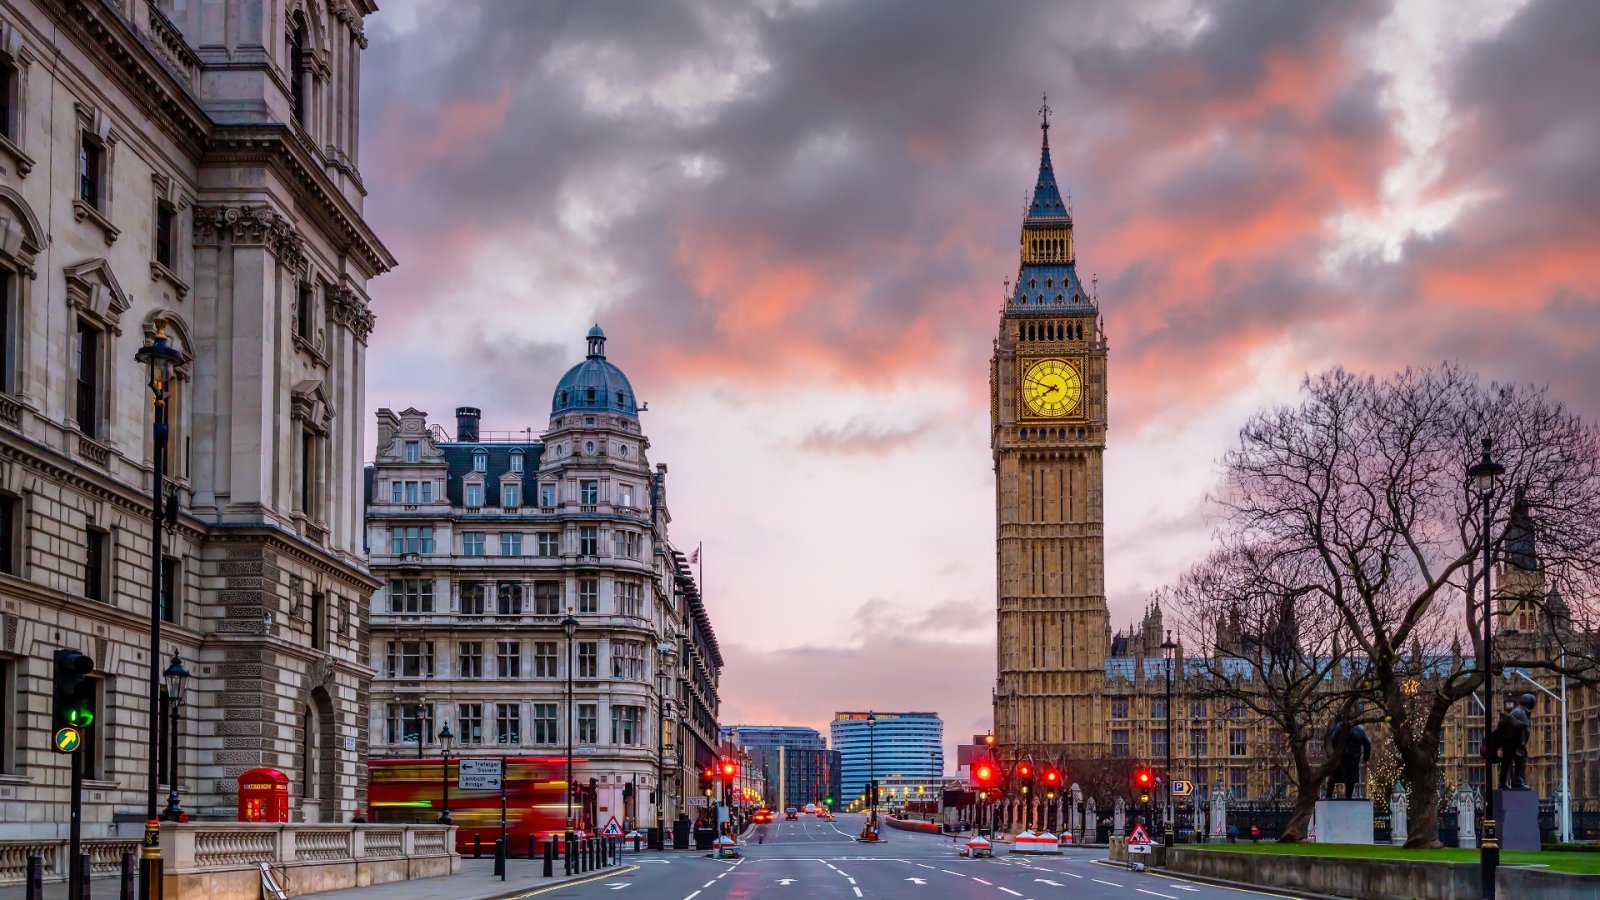 Cerchi cose gratis da fare a Londra? Ecco 10 attività gratuite nella capitale del Regno Unito